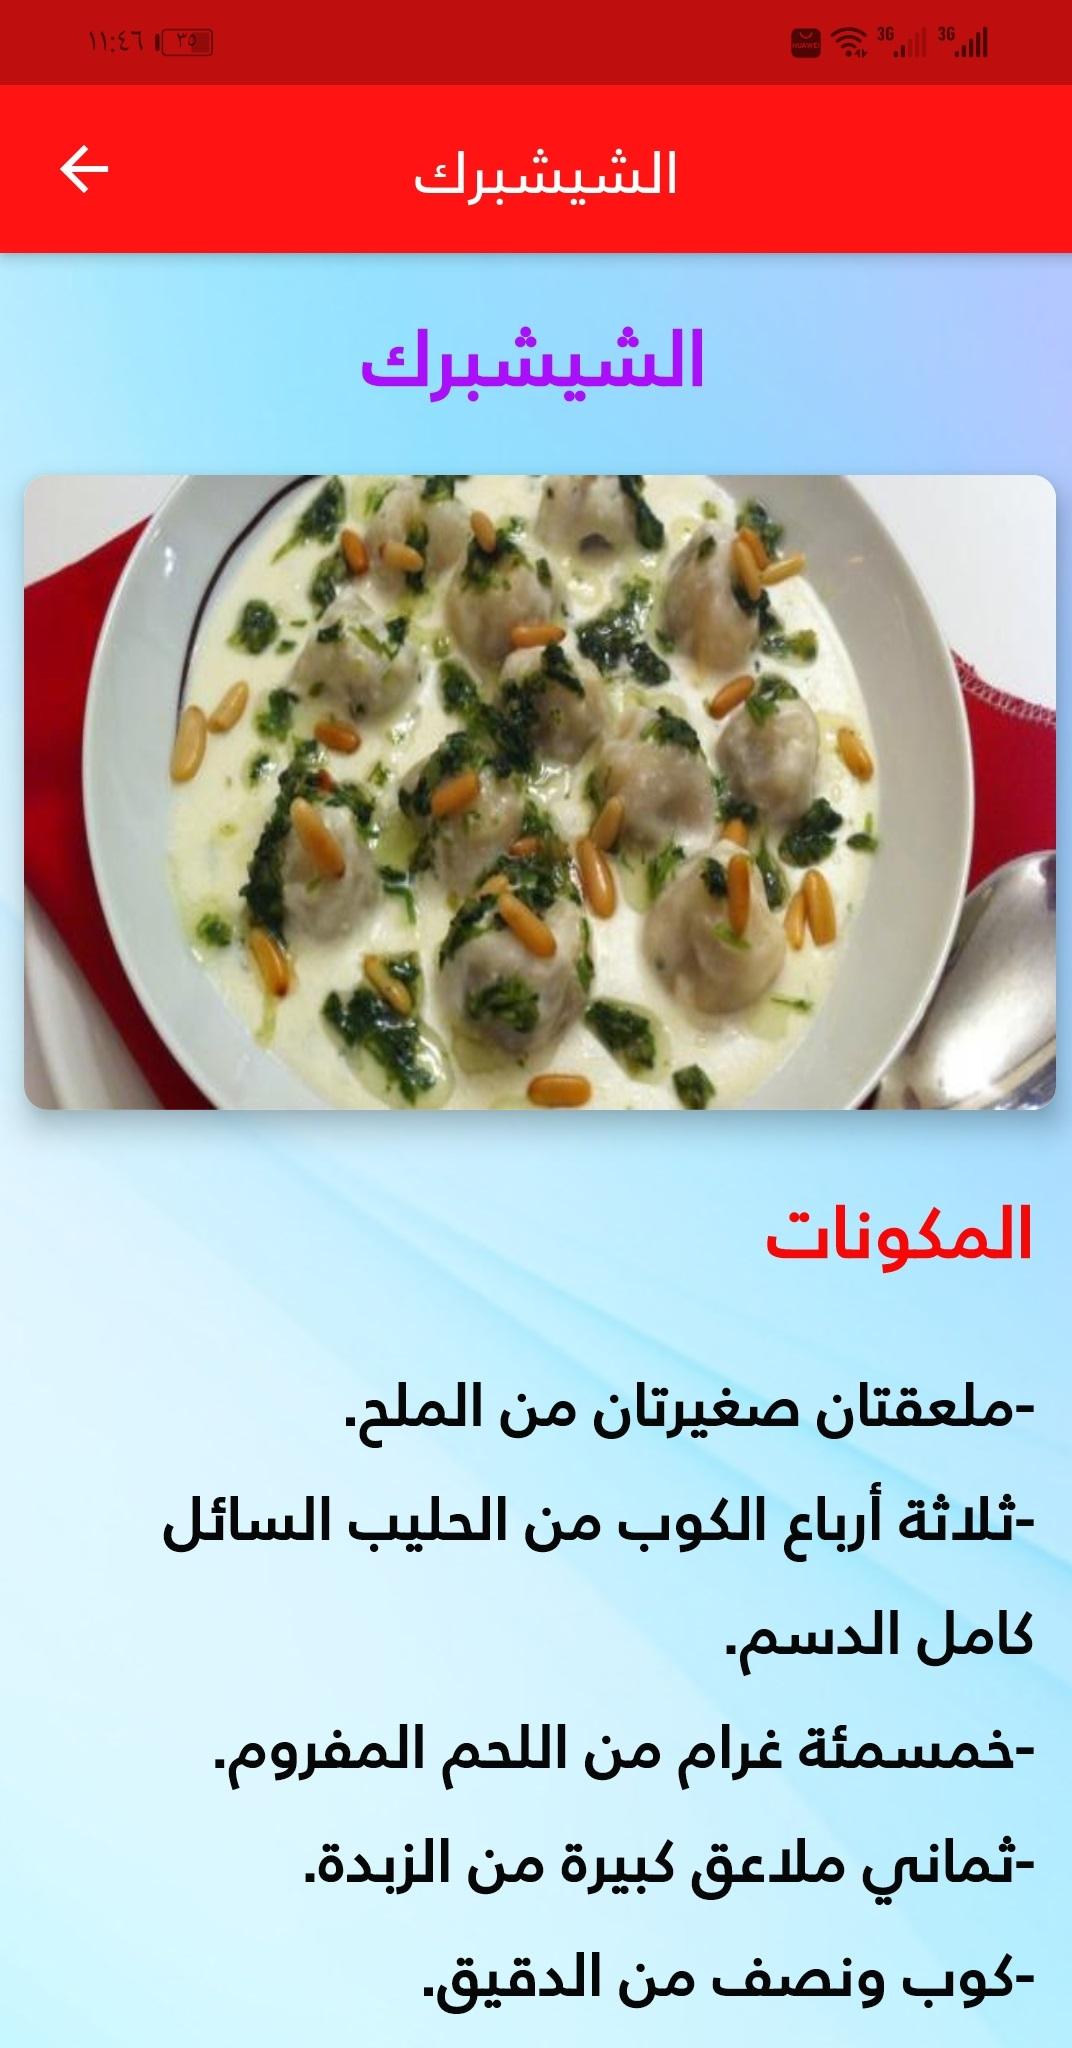 سورية مشهورة اكلات بالصور: لمحة